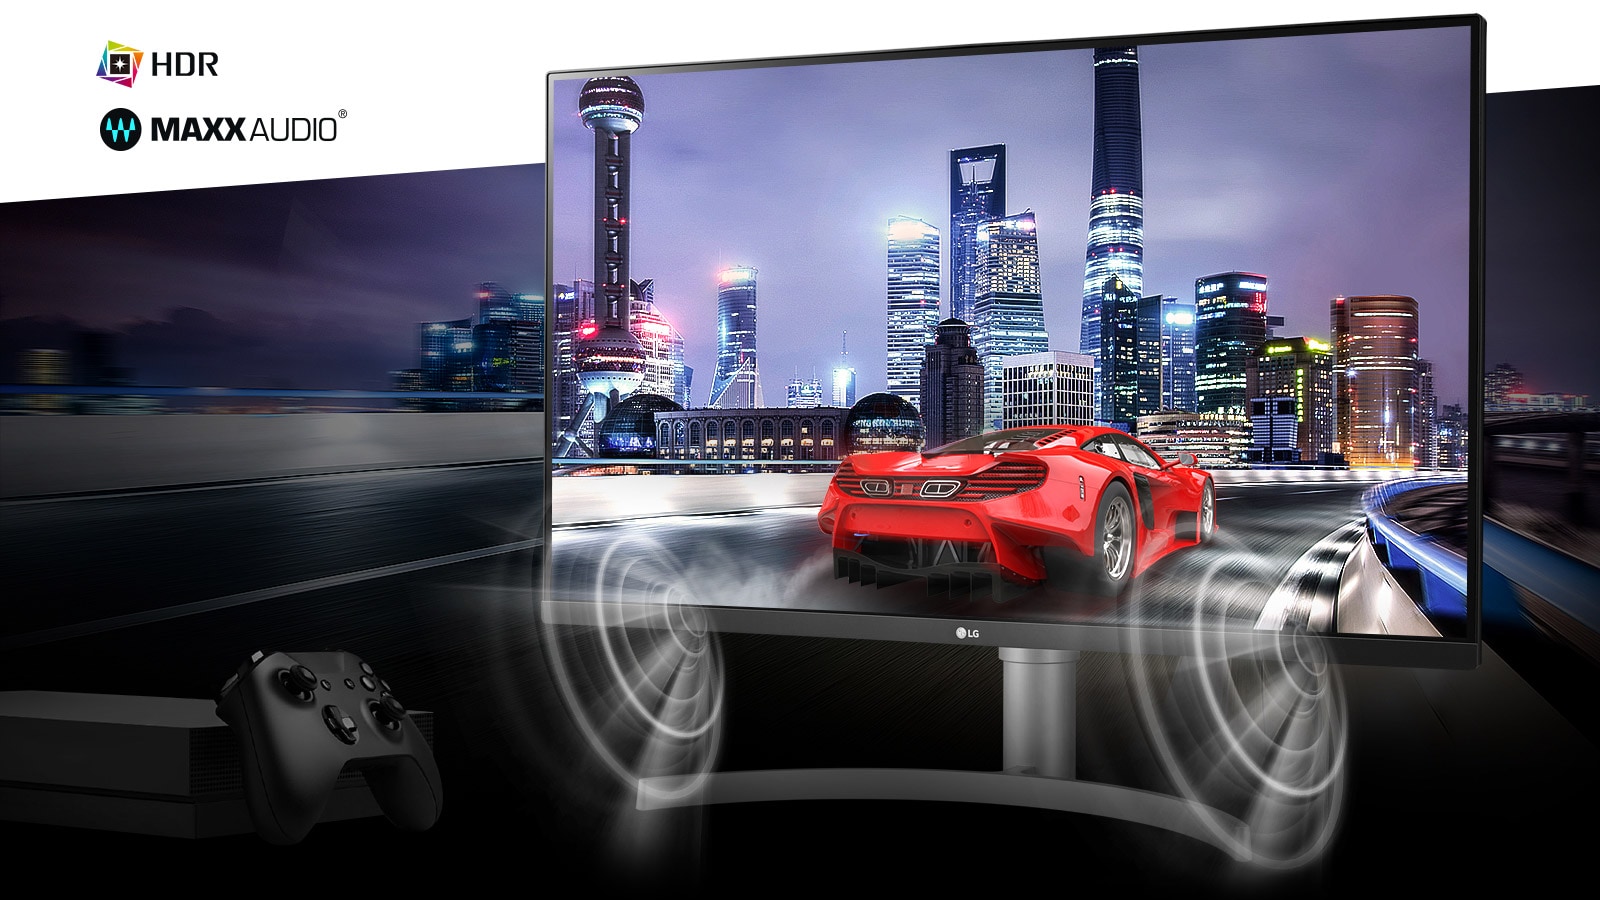 مشهد سيارة الألعاب من لعبة وحدة التحكم الحقيقية الغامرة بدقة 4K HDR مع MAXXAUDIO®